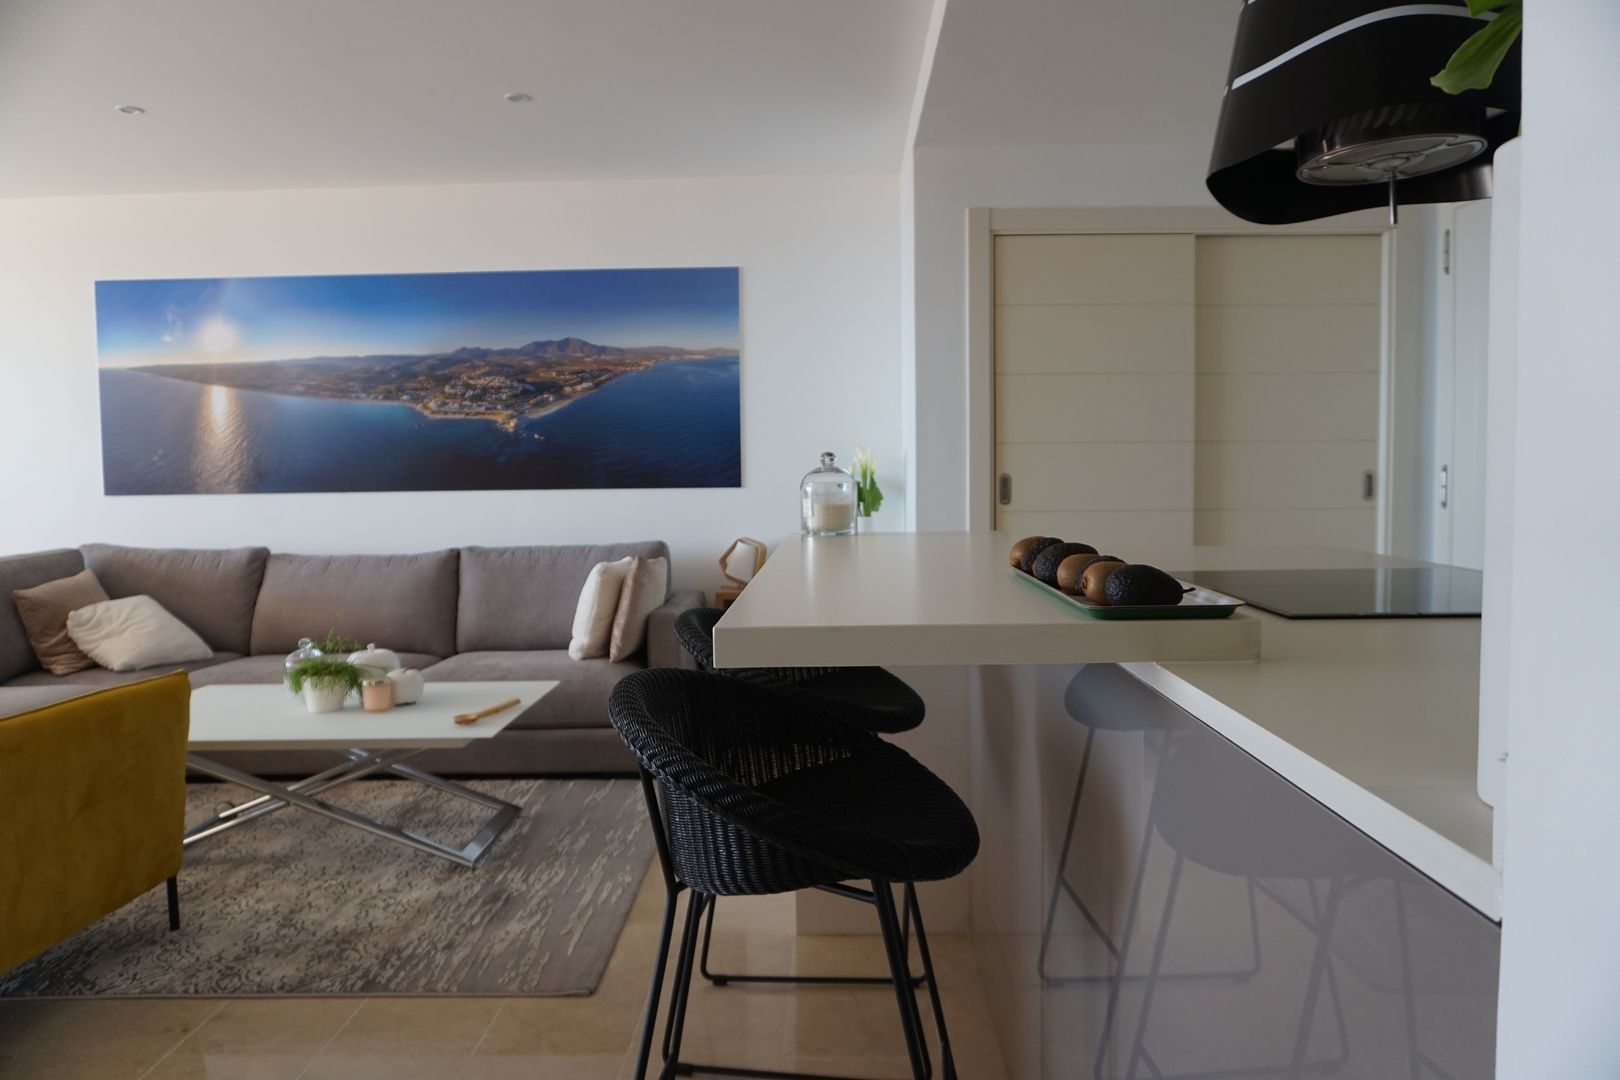 Proyecto e instalación de cocina moderna abierta al salón en Málaga, Decodan - Estudio de cocinas y armarios en Estepona y Marbella Decodan - Estudio de cocinas y armarios en Estepona y Marbella Built-in kitchens